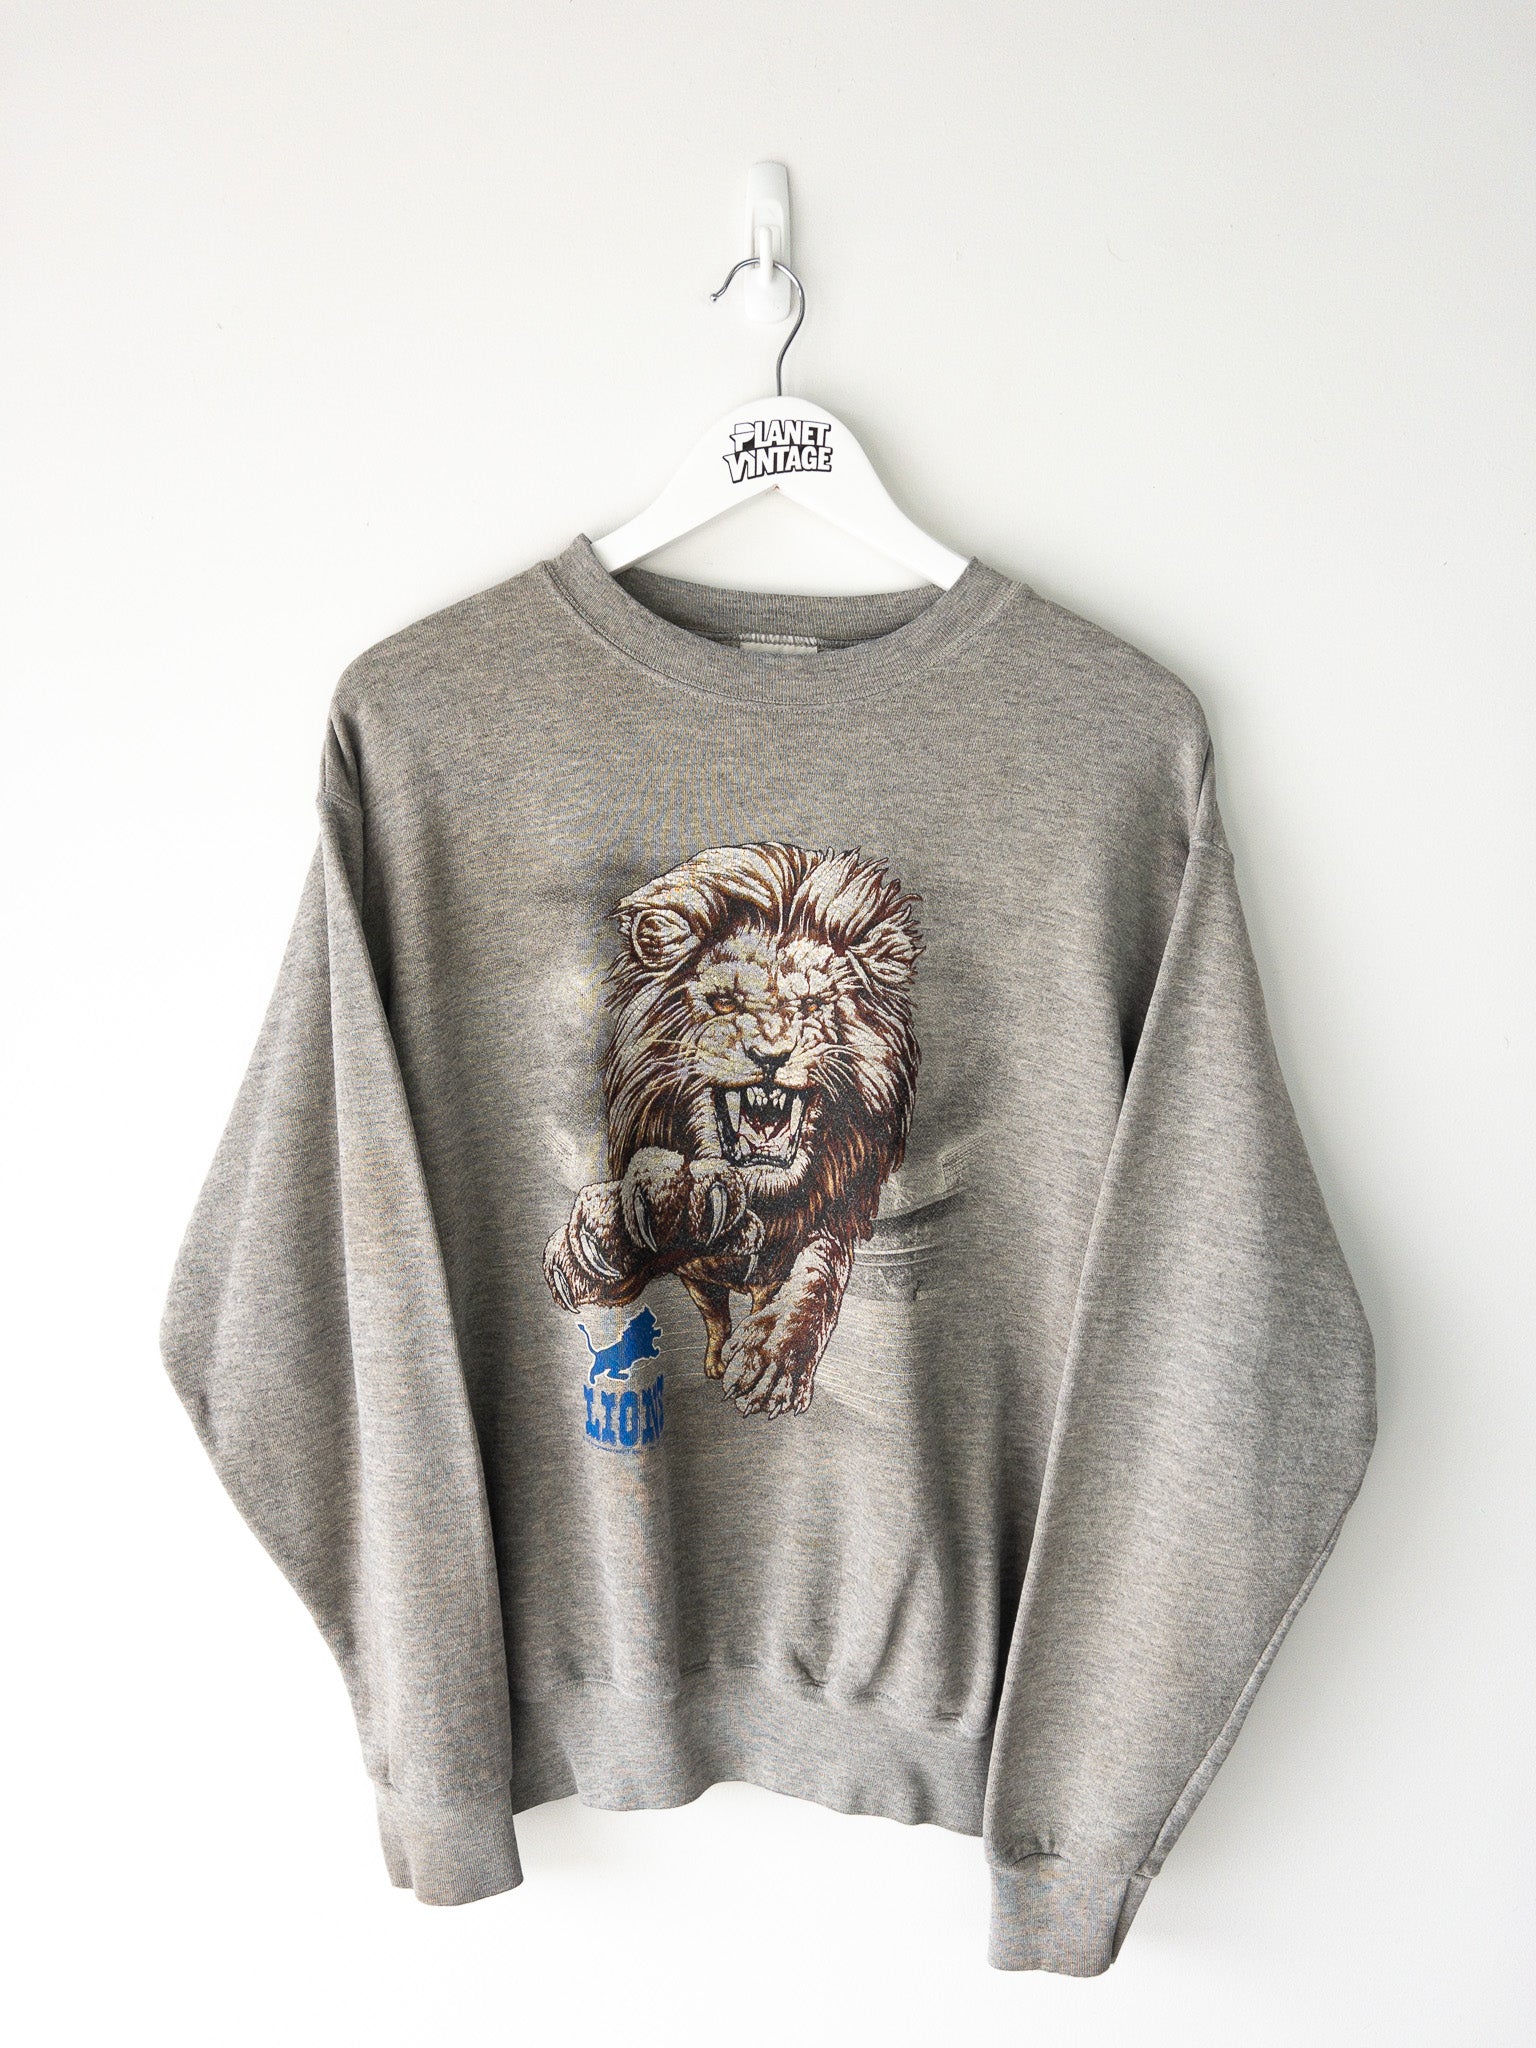 Vintage Detroit Lions Sweatshirt (M)